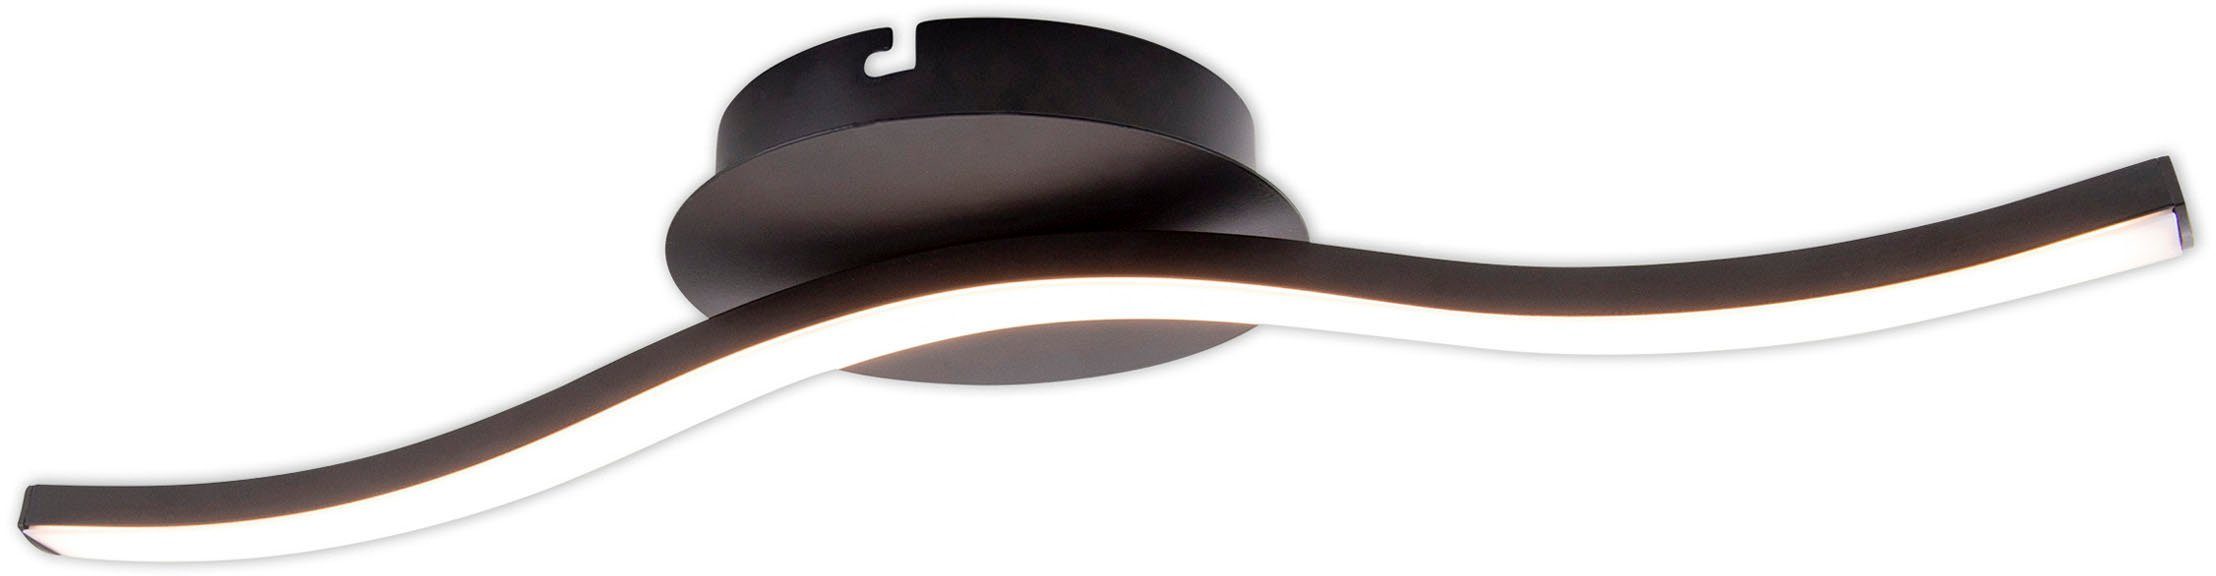 warmweiß, L: Deckenlampe, fest näve Onda, 6W, Wandleuchte integriert, 45cm, Warmweiß, LED schwarz-matt, IP20 LED Deckenleuchte